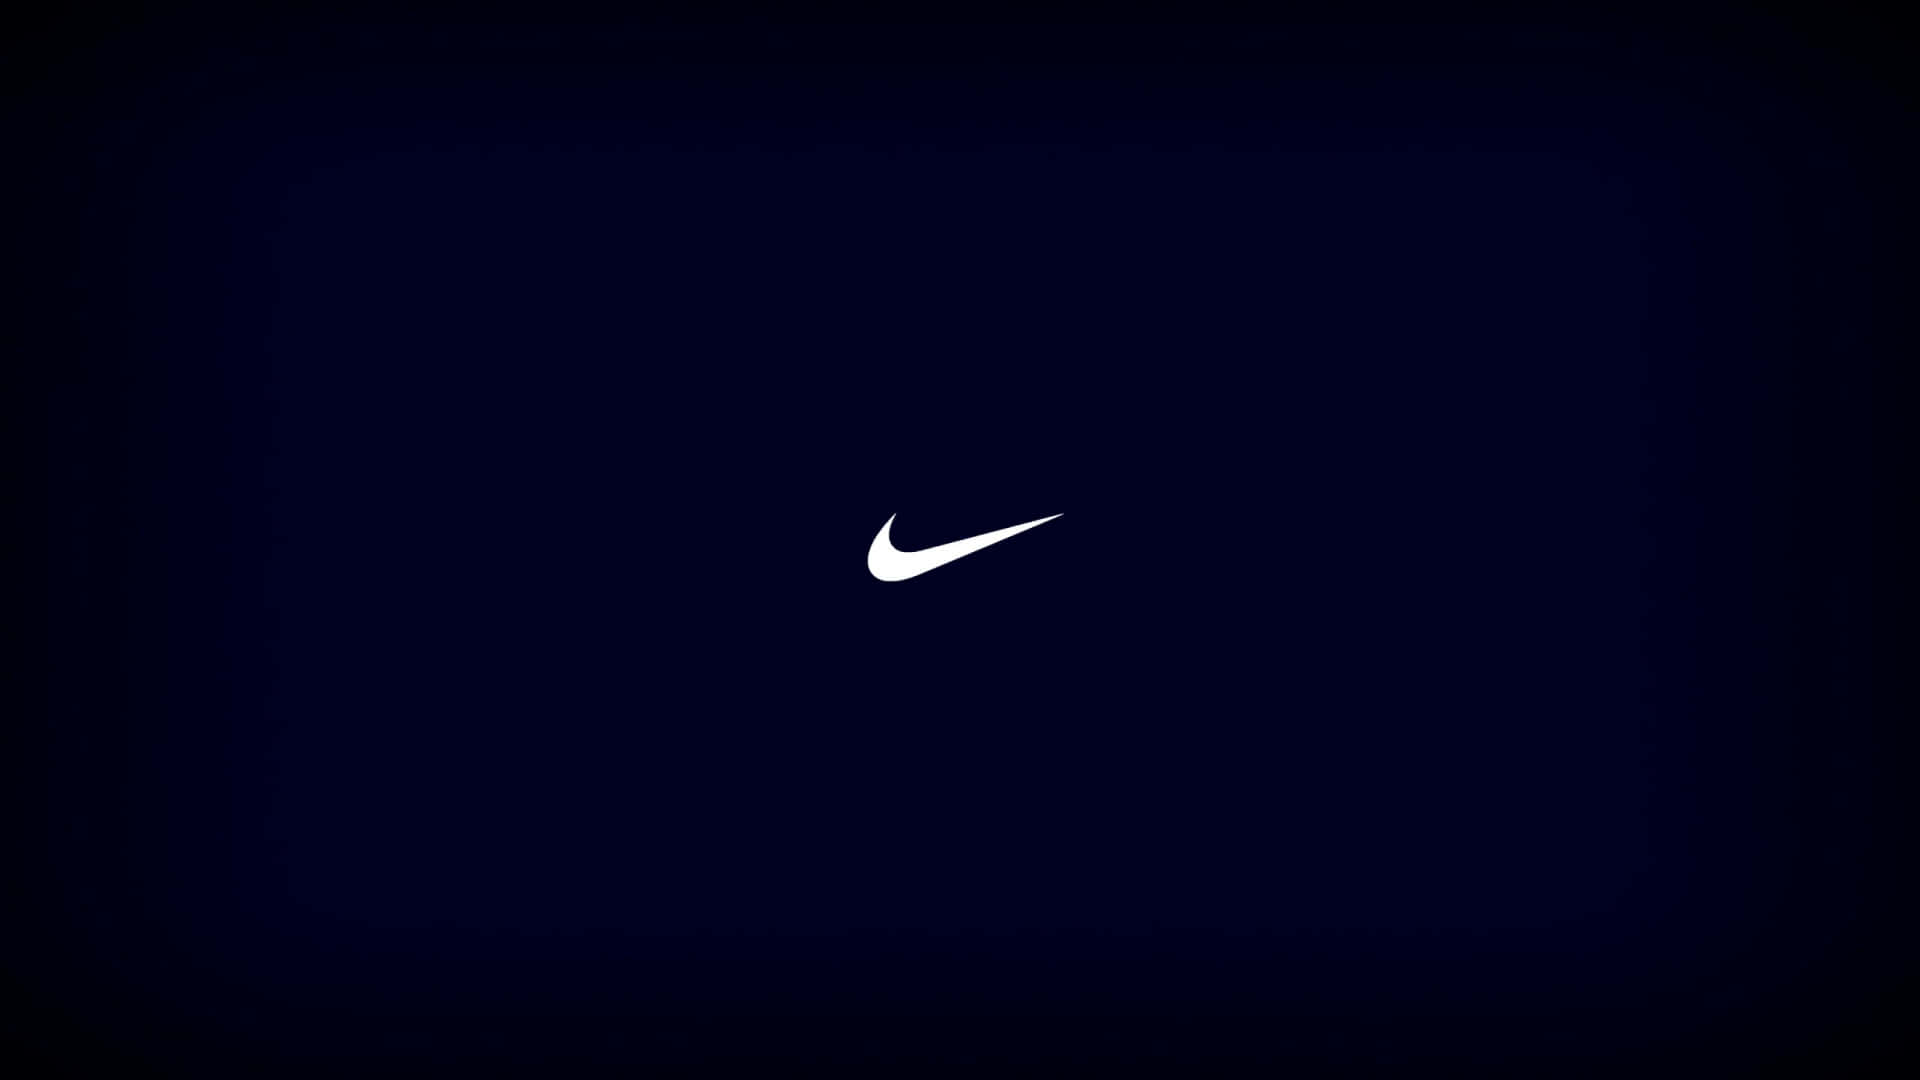 Fondode Pantalla Nike Azul Impactante. Fondo de pantalla